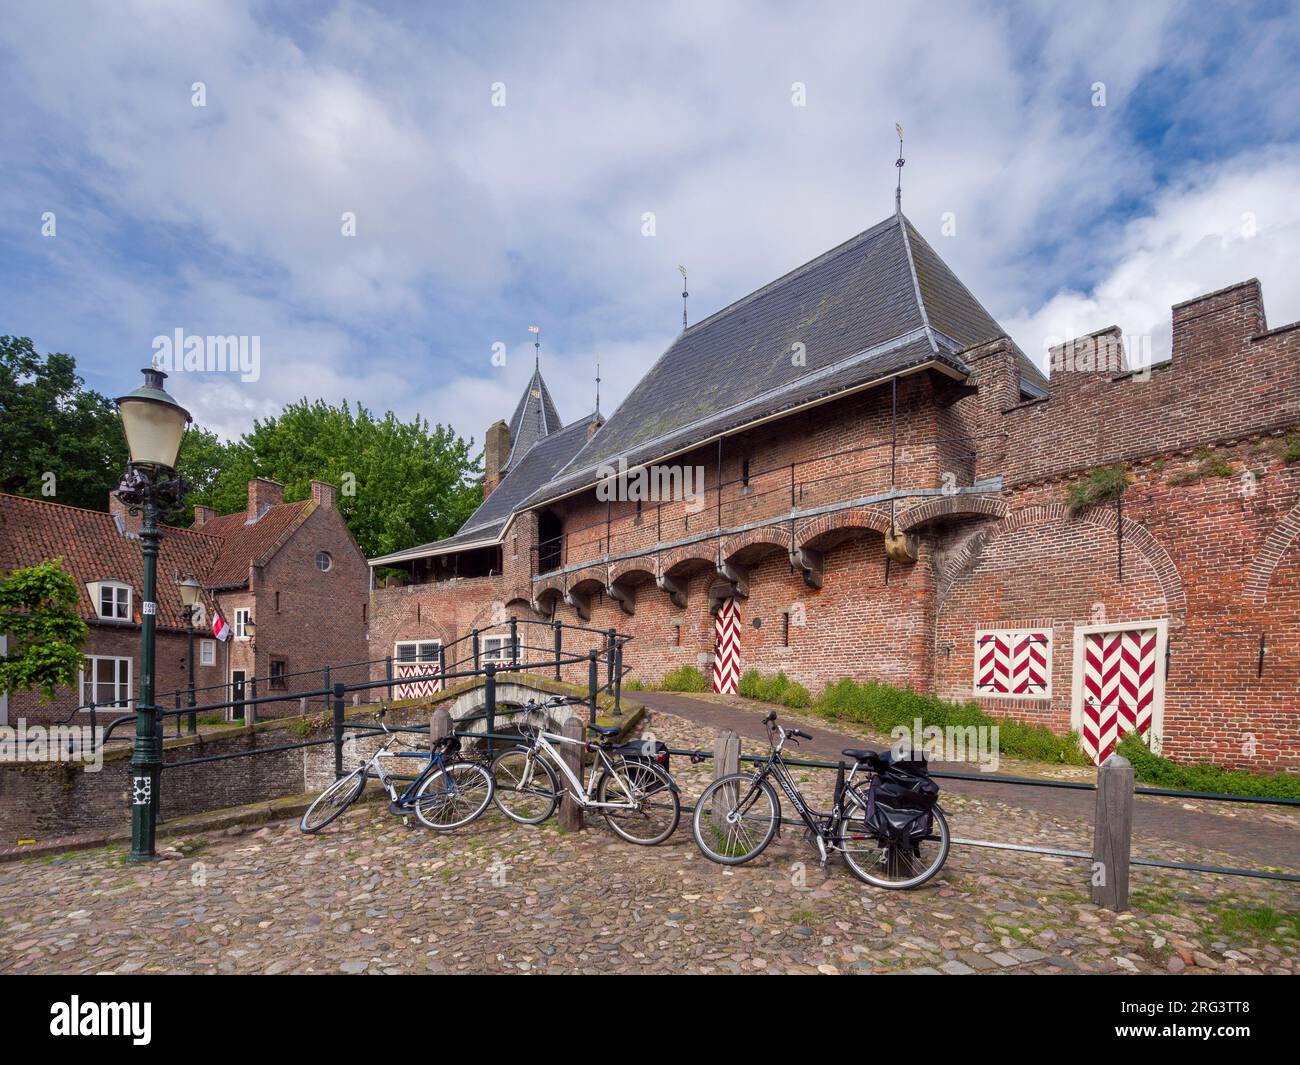 La façade sud-est de la maison médiévale de Koppelpoort dans la ville néerlandaise d'Amersfoort, pays-Bas, Europe. Banque D'Images